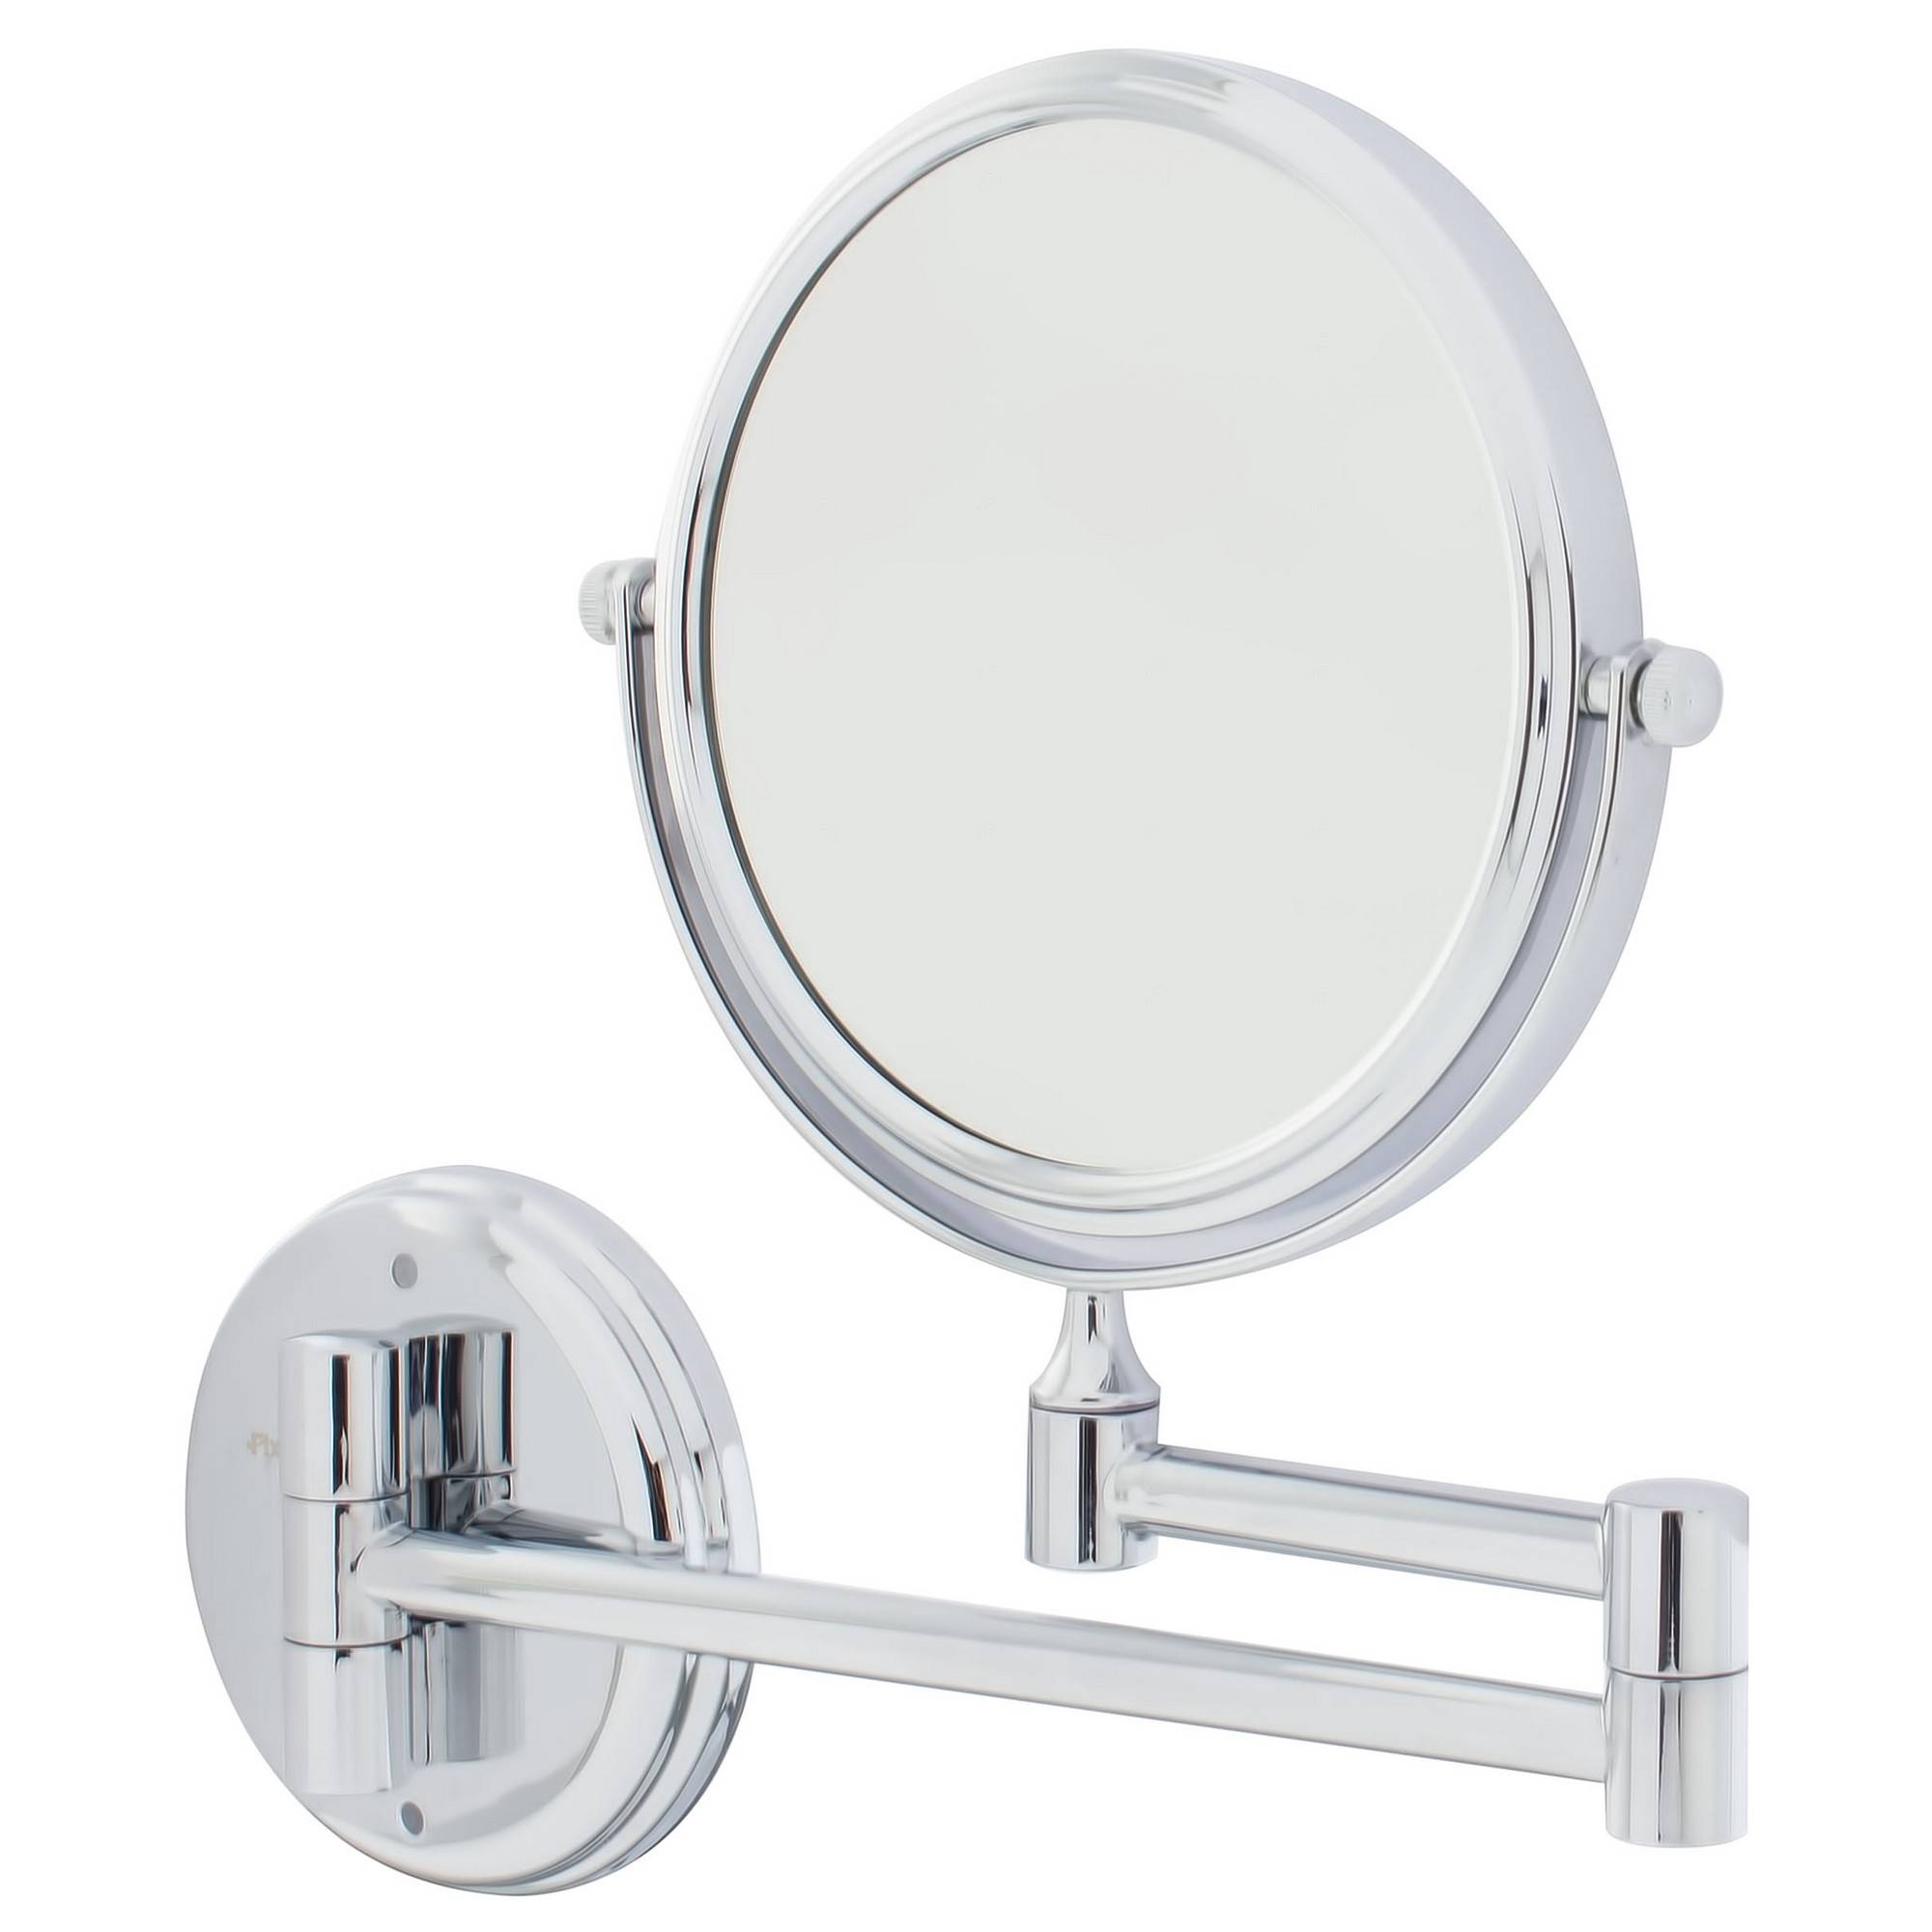 Умное зеркало в ванную: функционал, управление, популярные модели.